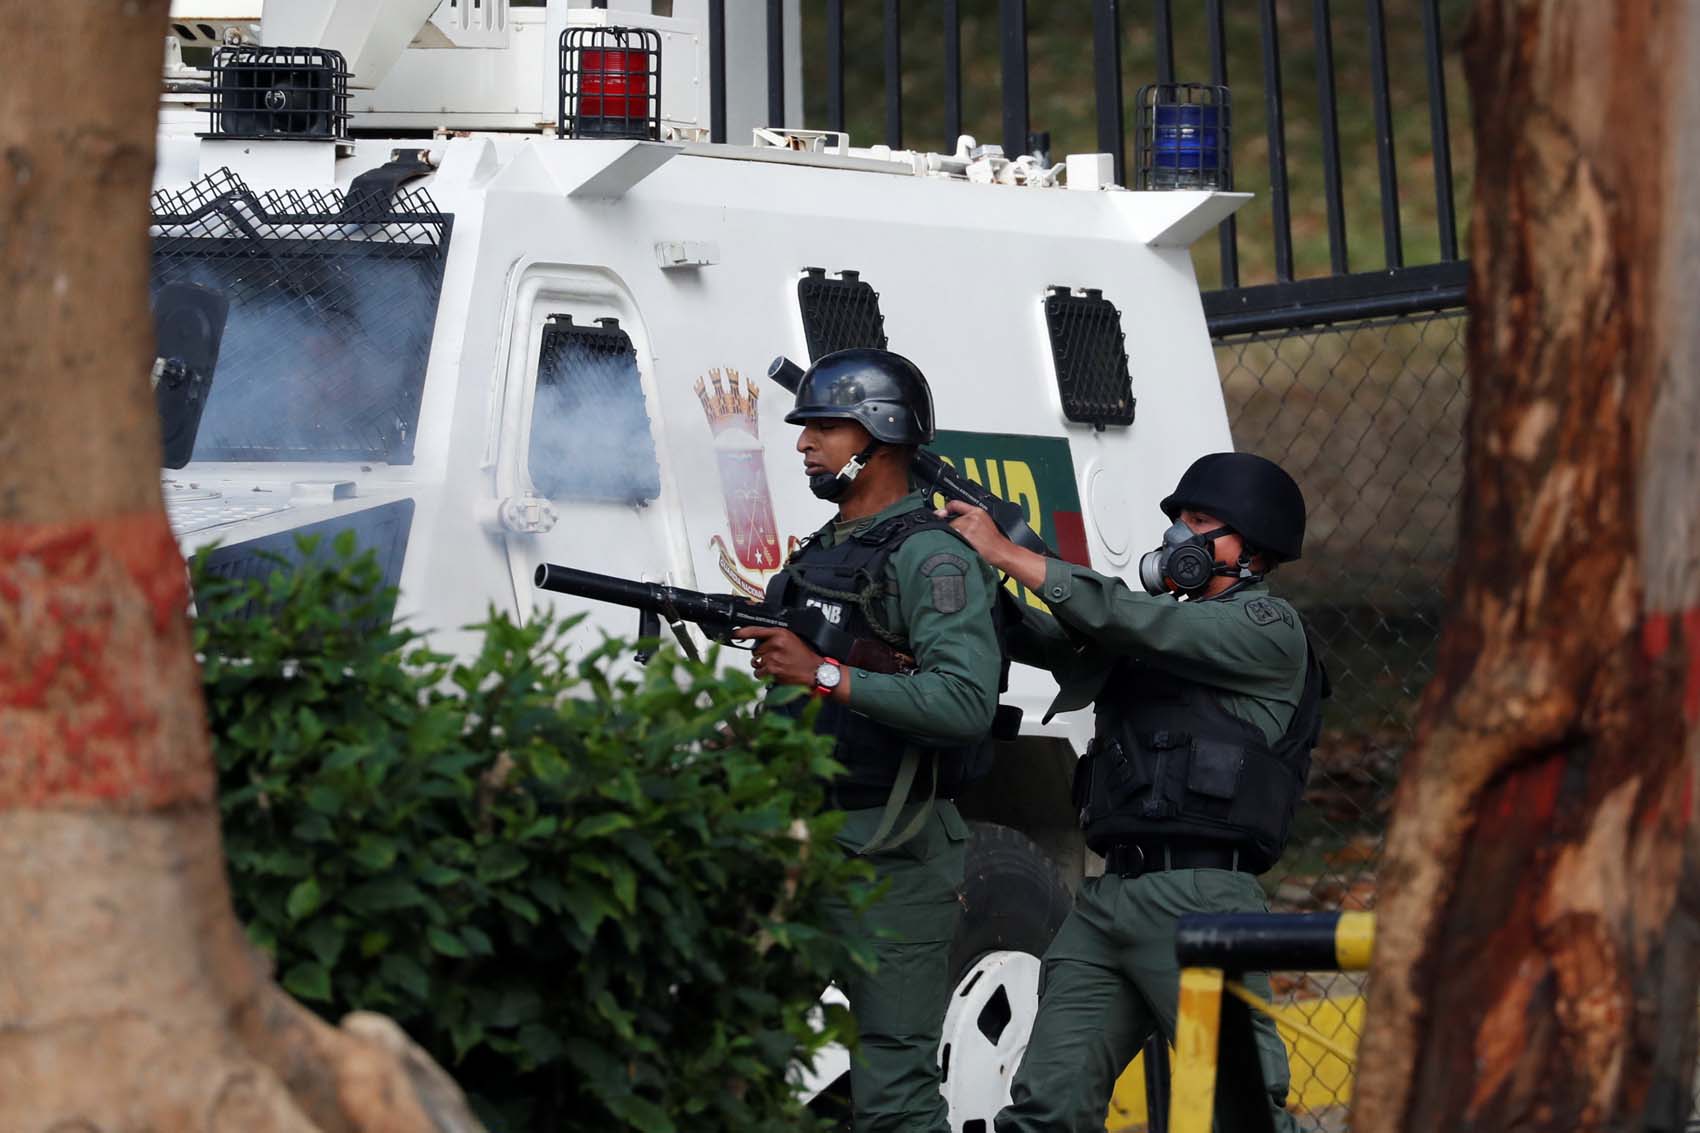 Fuerzas represivas de Maduro han asesinado a 22 personas desde el 21 de enero, denuncia Foro Penal